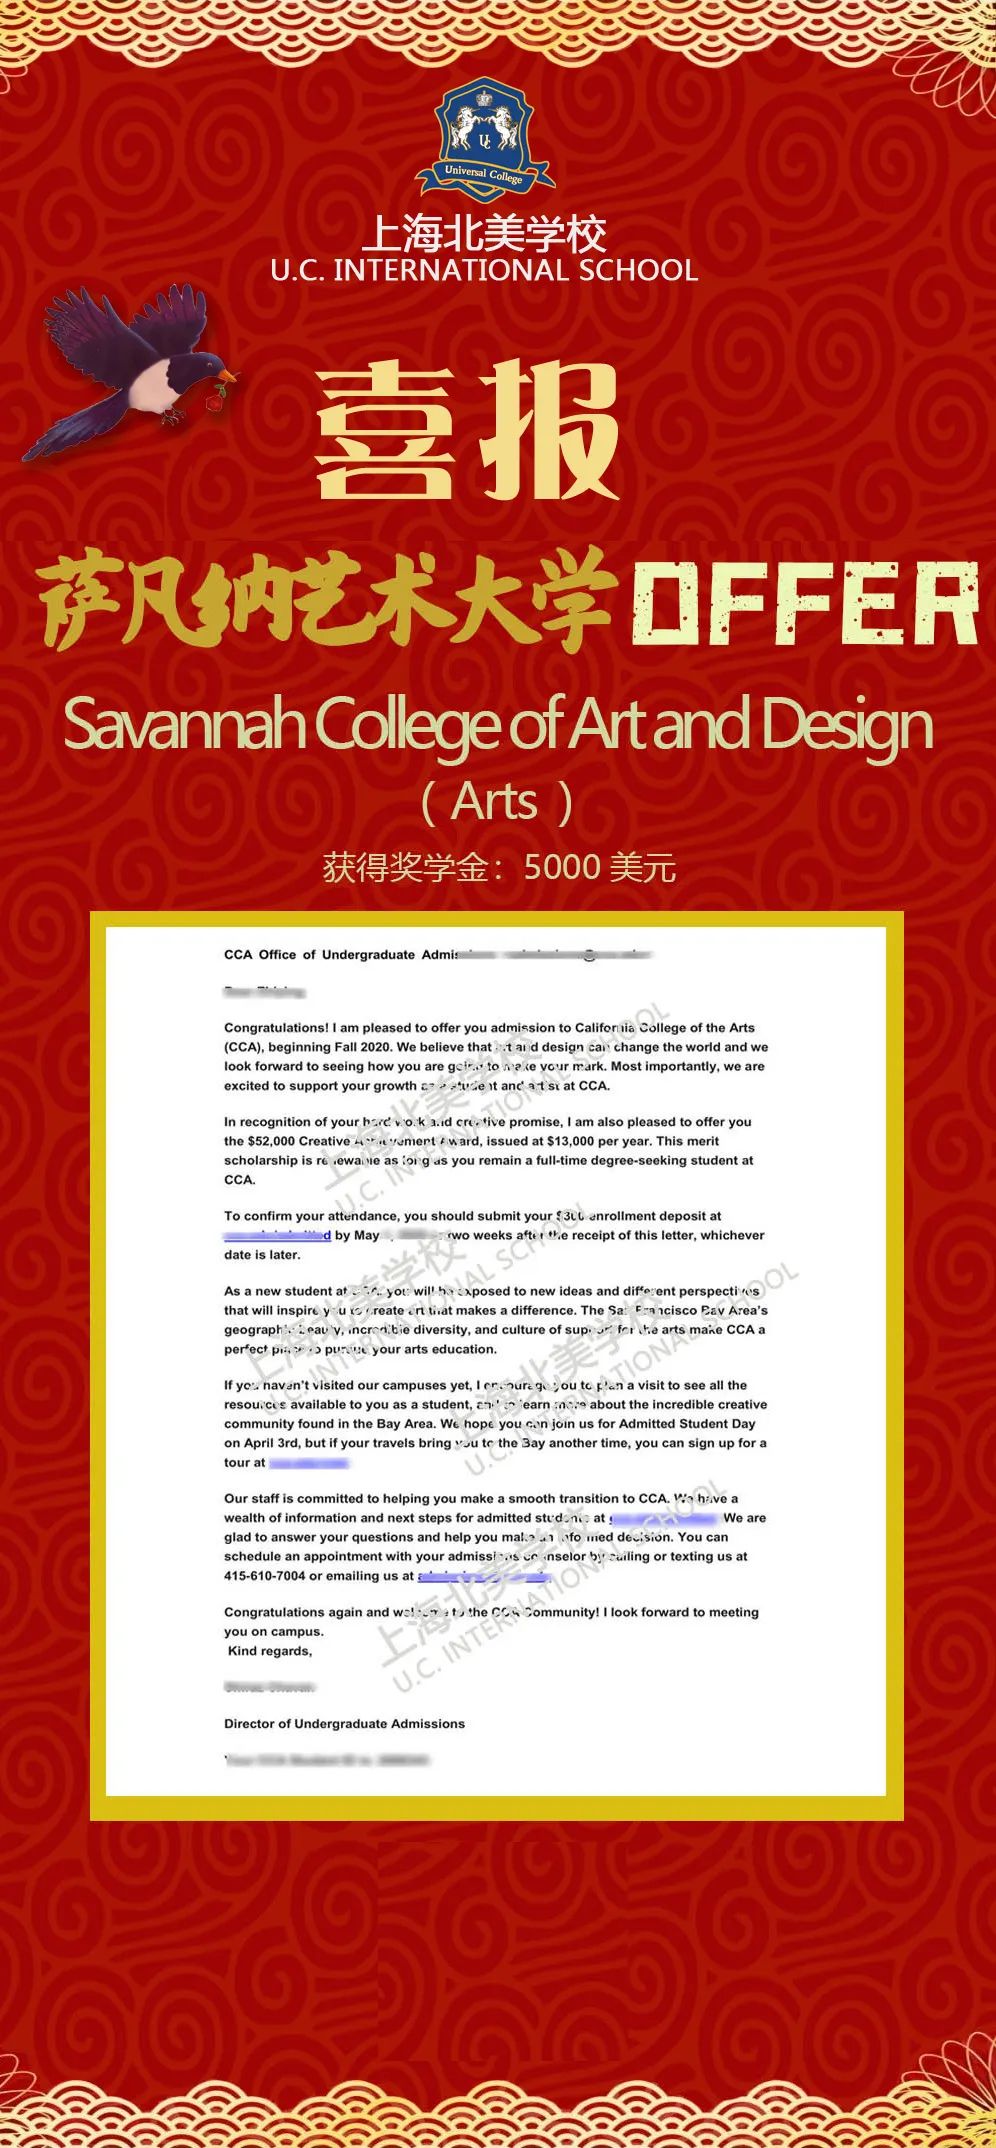 特色课程/未来国际艺术领域寻求职业发展--北美设计&艺术课程